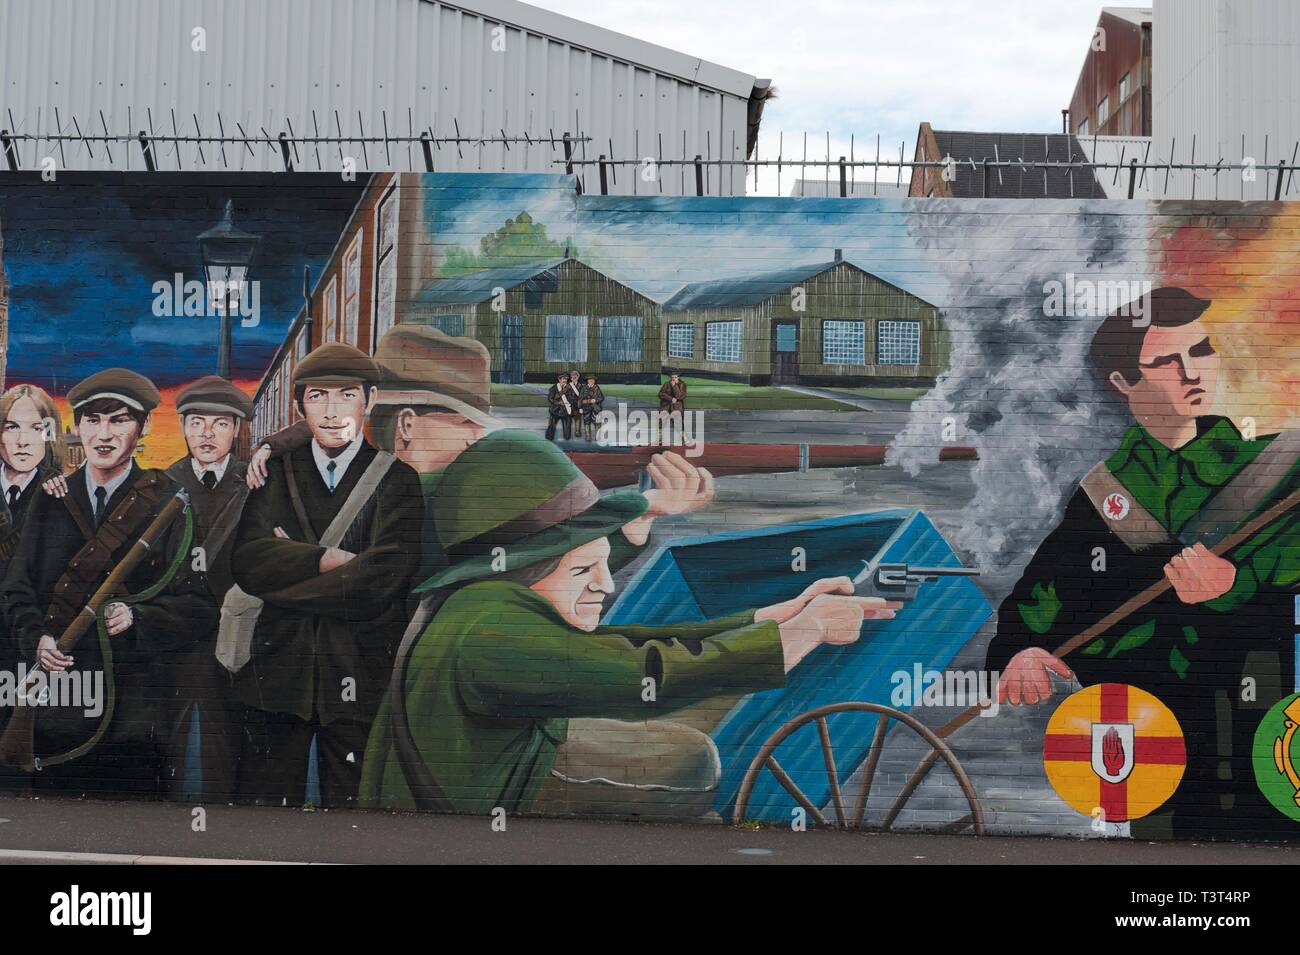 Brotes de arroz, políticos graffiti en la pared en el oeste de Belfast, recordándole de guerra civil entre protestantes y católicos, Belfast, Condado de Antrim, el norte Foto de stock